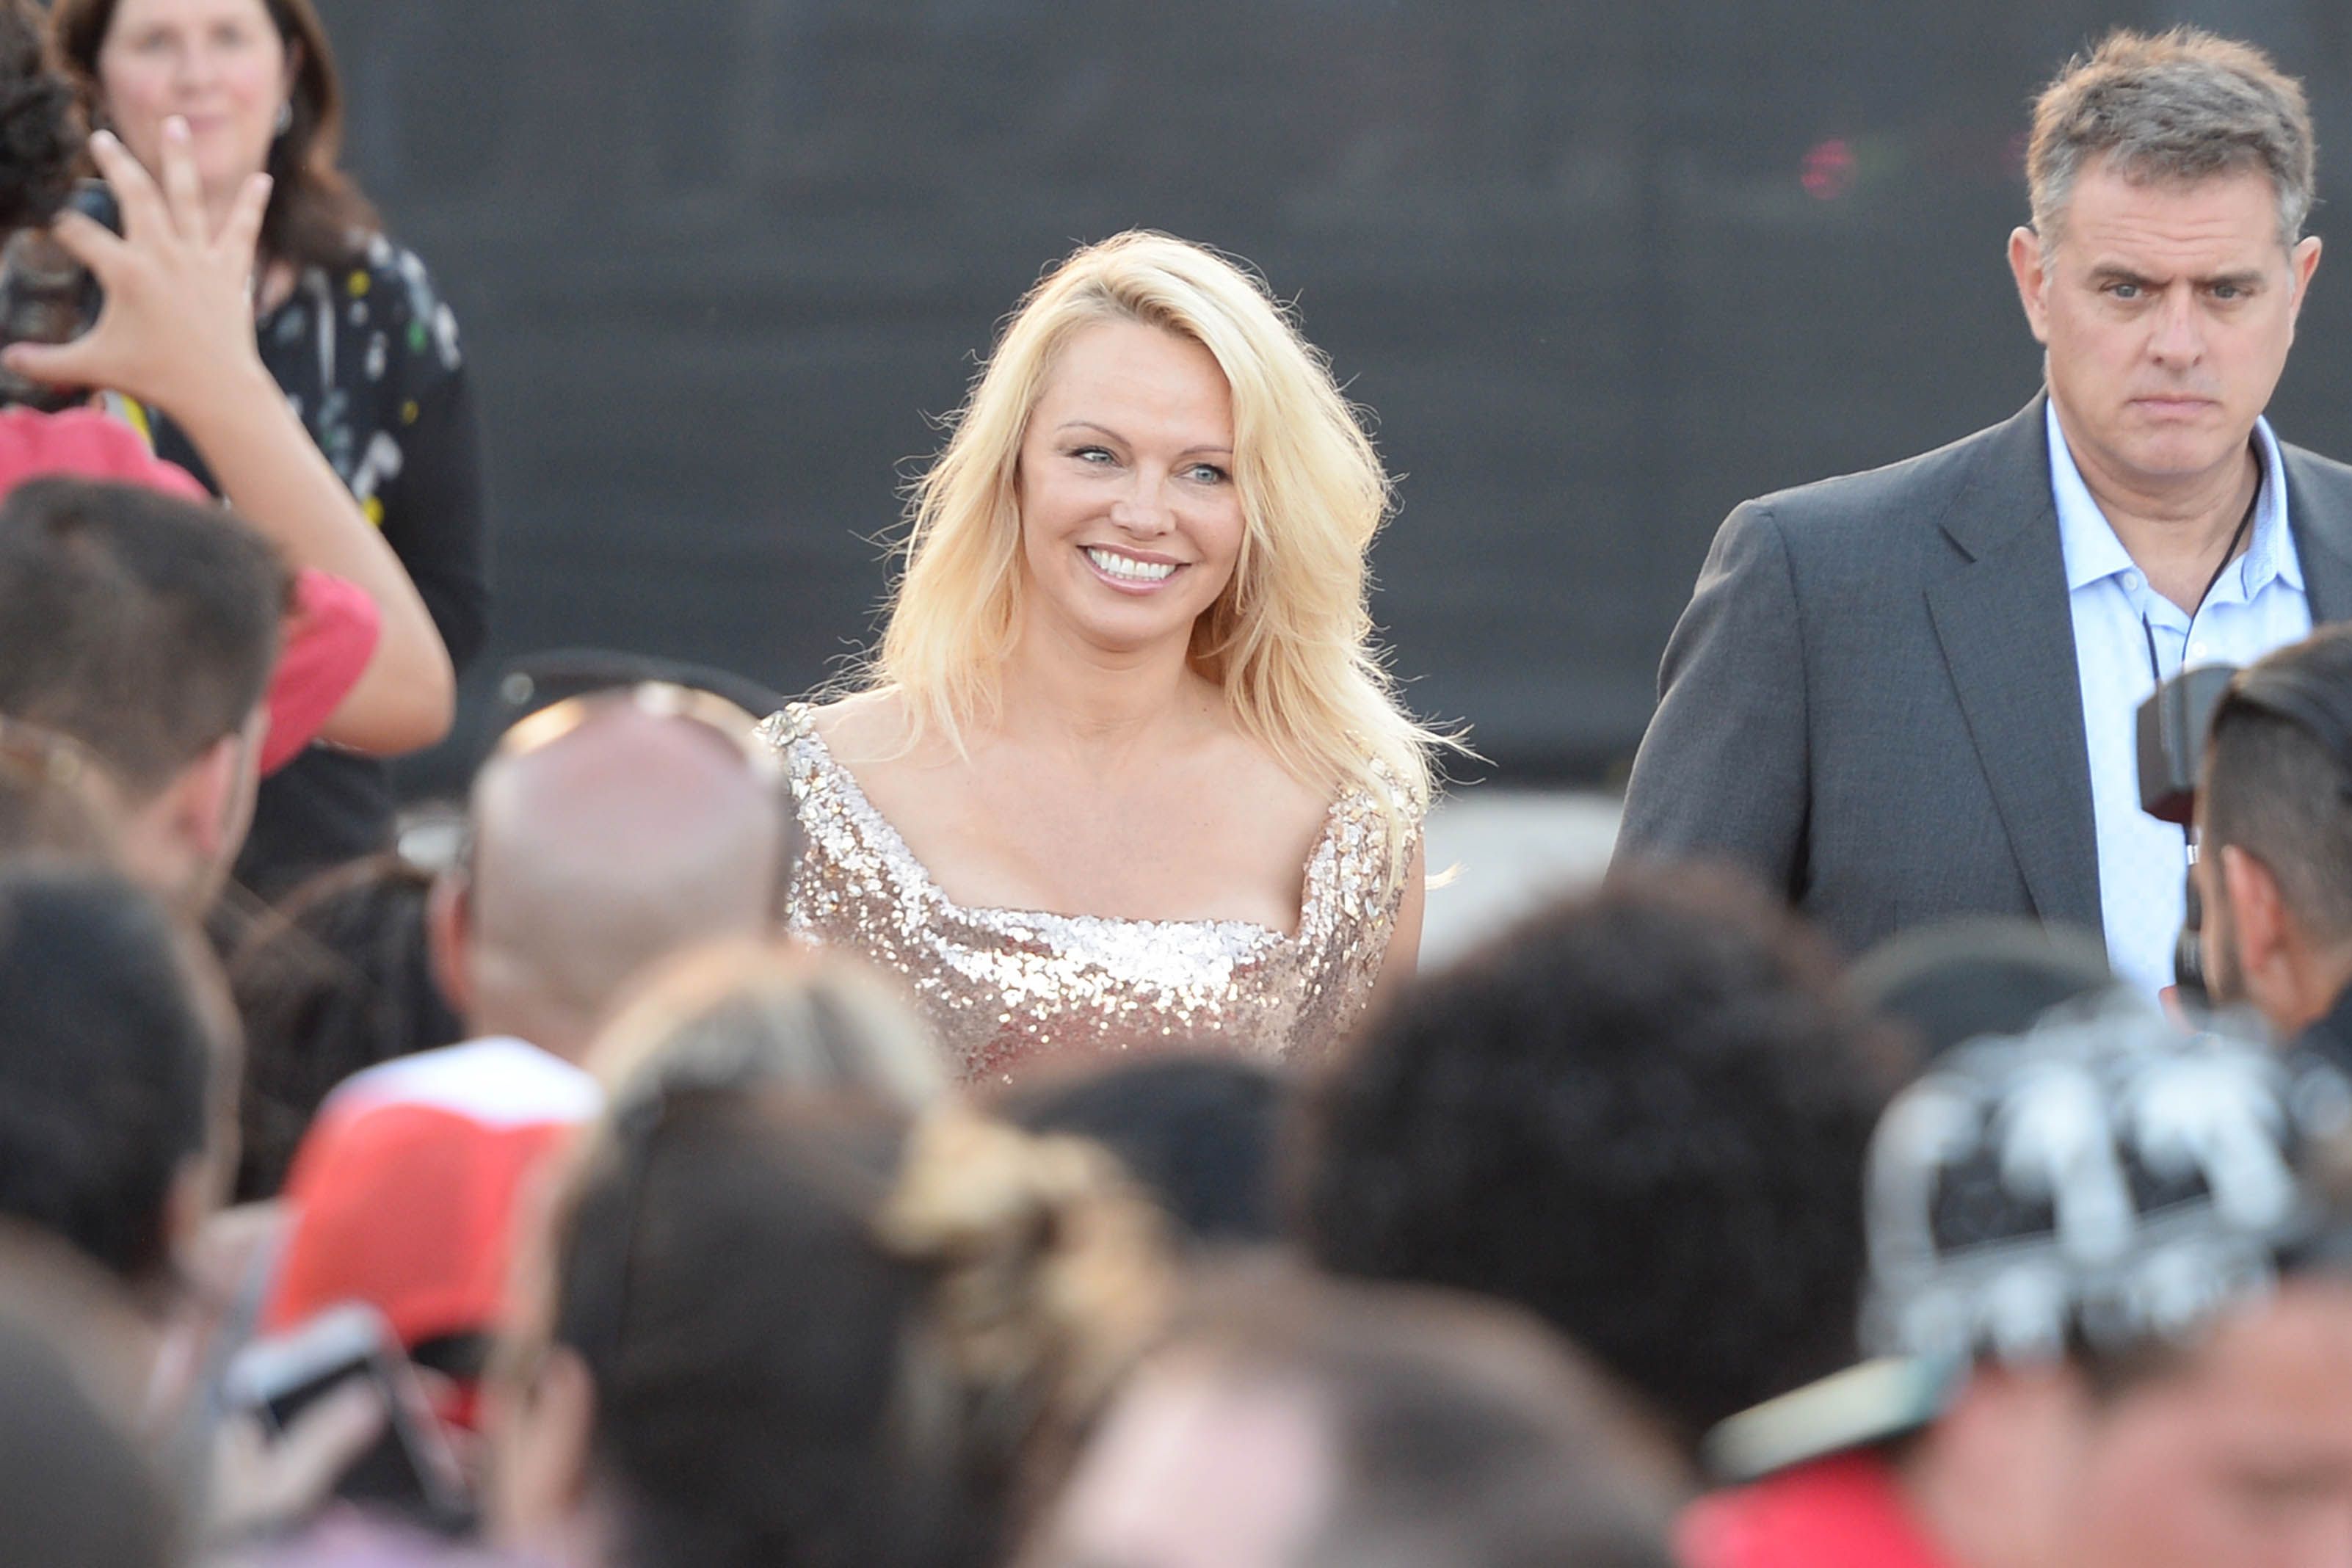 Apesar de ganhar seis dígitos por episódio, Pamela Anderson se recusou a assistir Baywatch